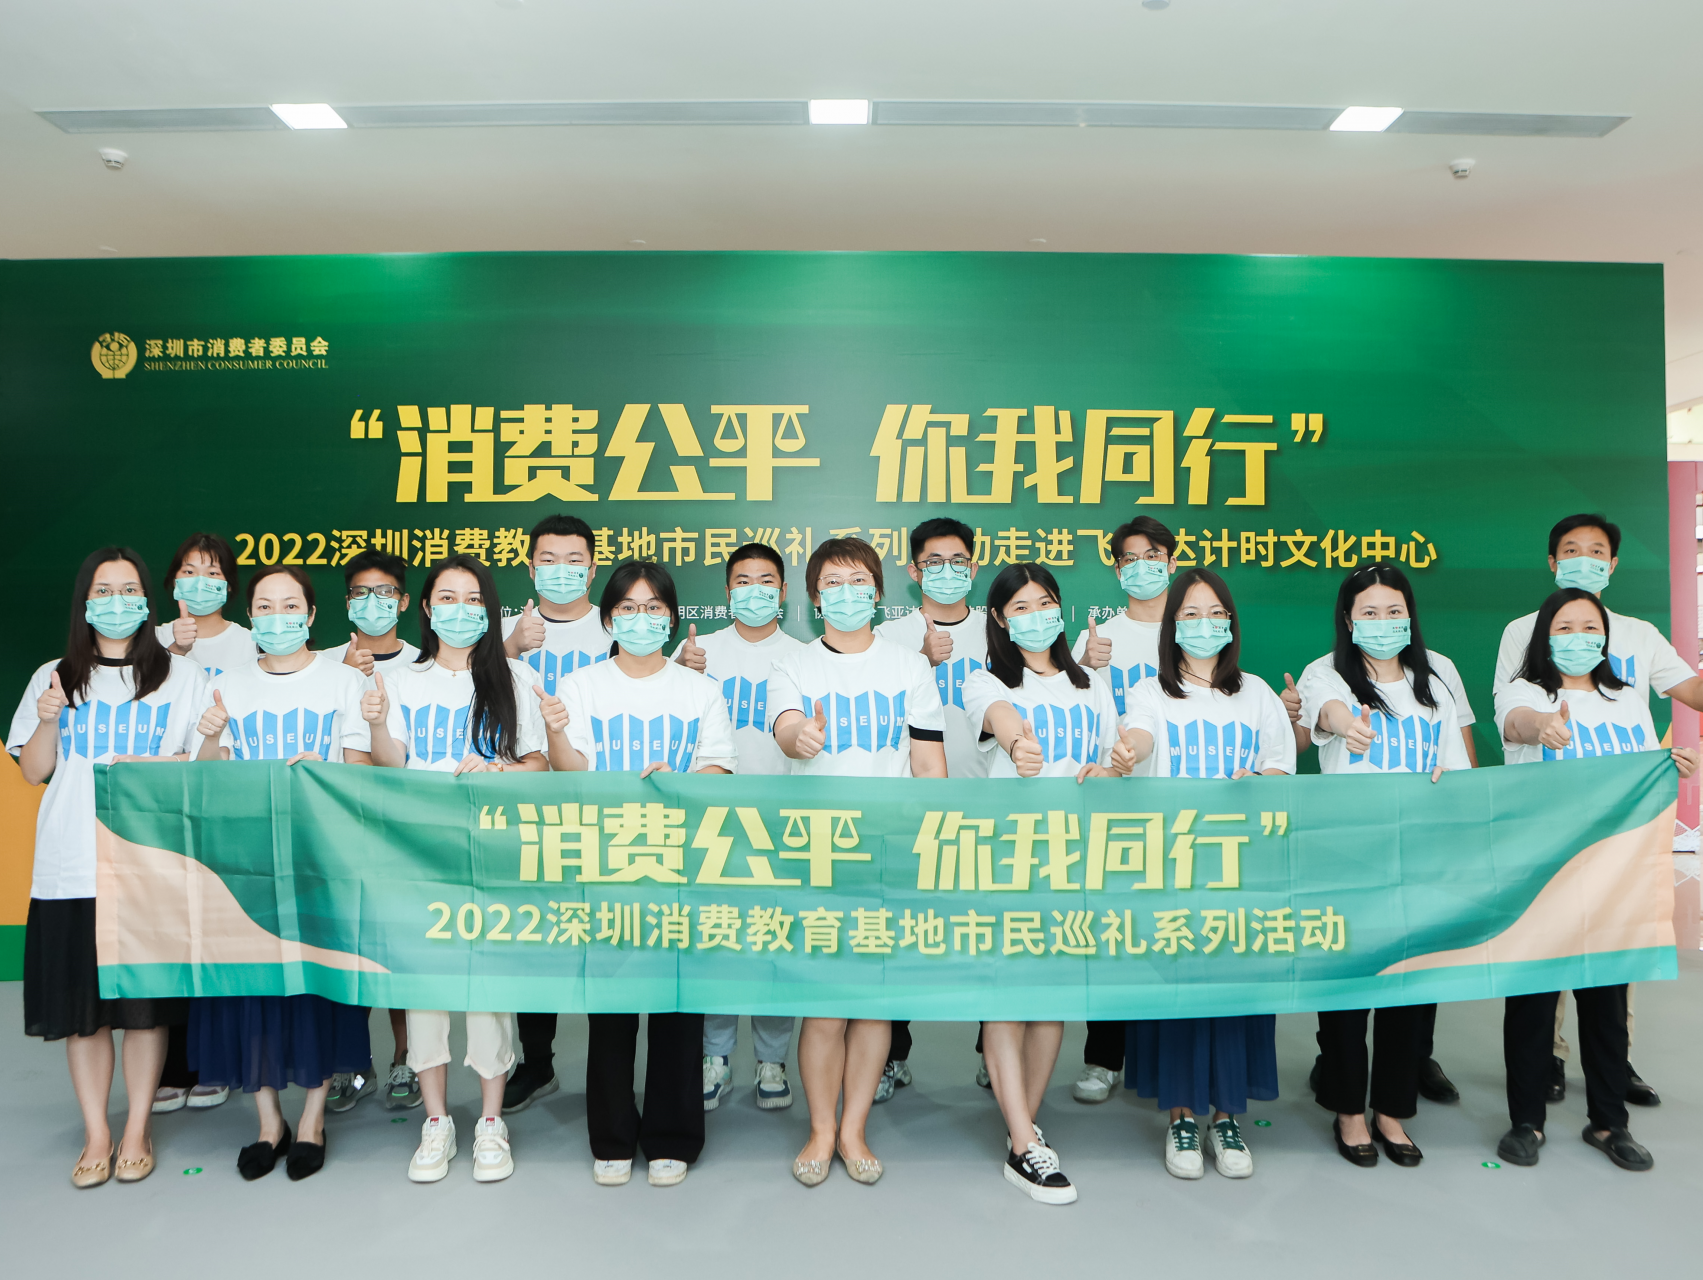 深圳建立第4个消费教育基地  “飞亚达计时文化中心” 开启时光之旅